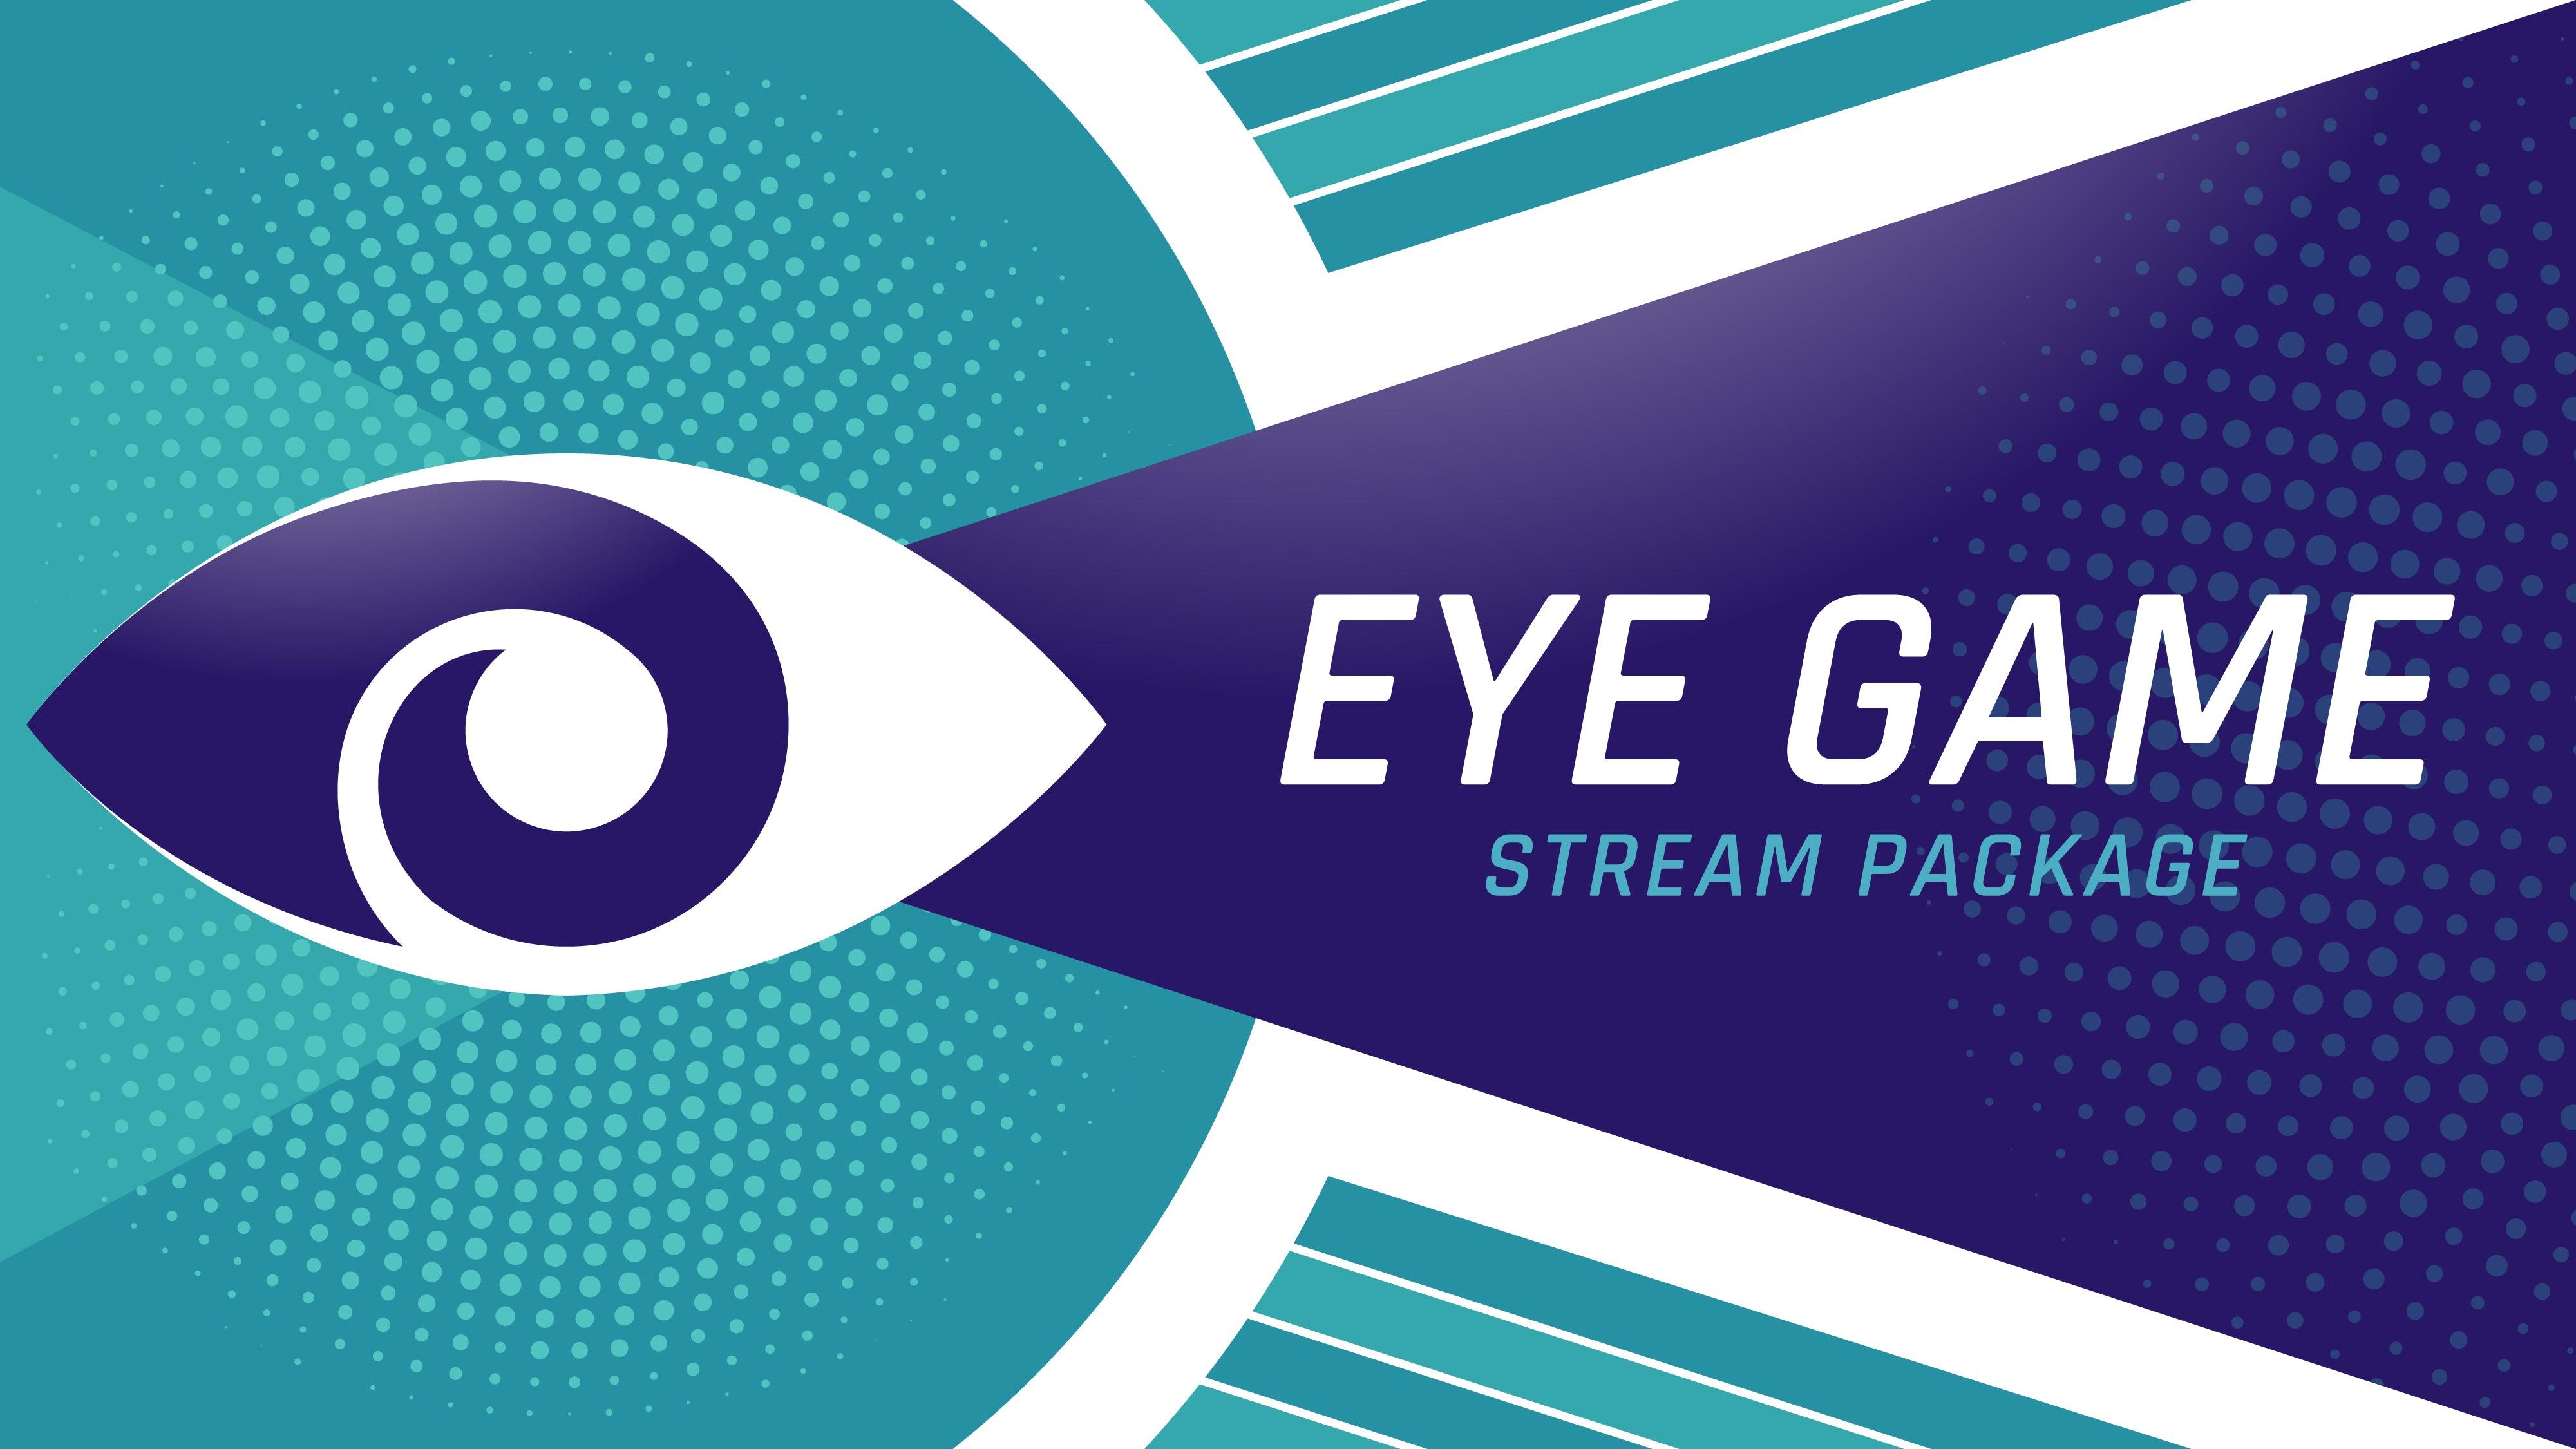 stream-overlay-package-eye-game-stream-designz